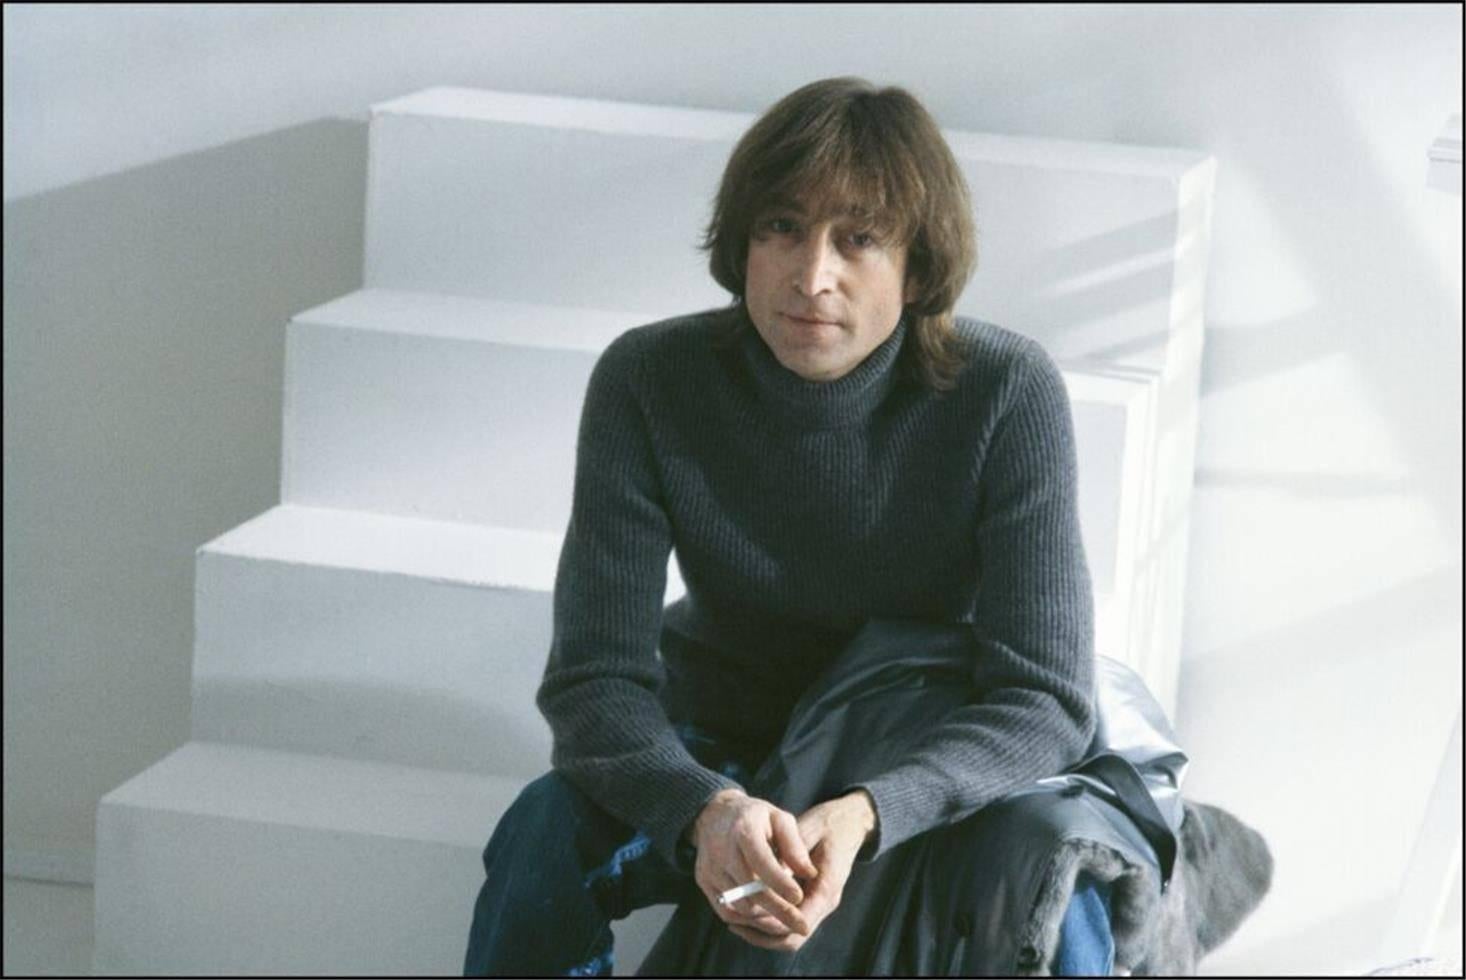 Allan Tannenbaum Portrait Photograph - John Lennon at the Filming of "Just Like Starting Over", November 26, 1980